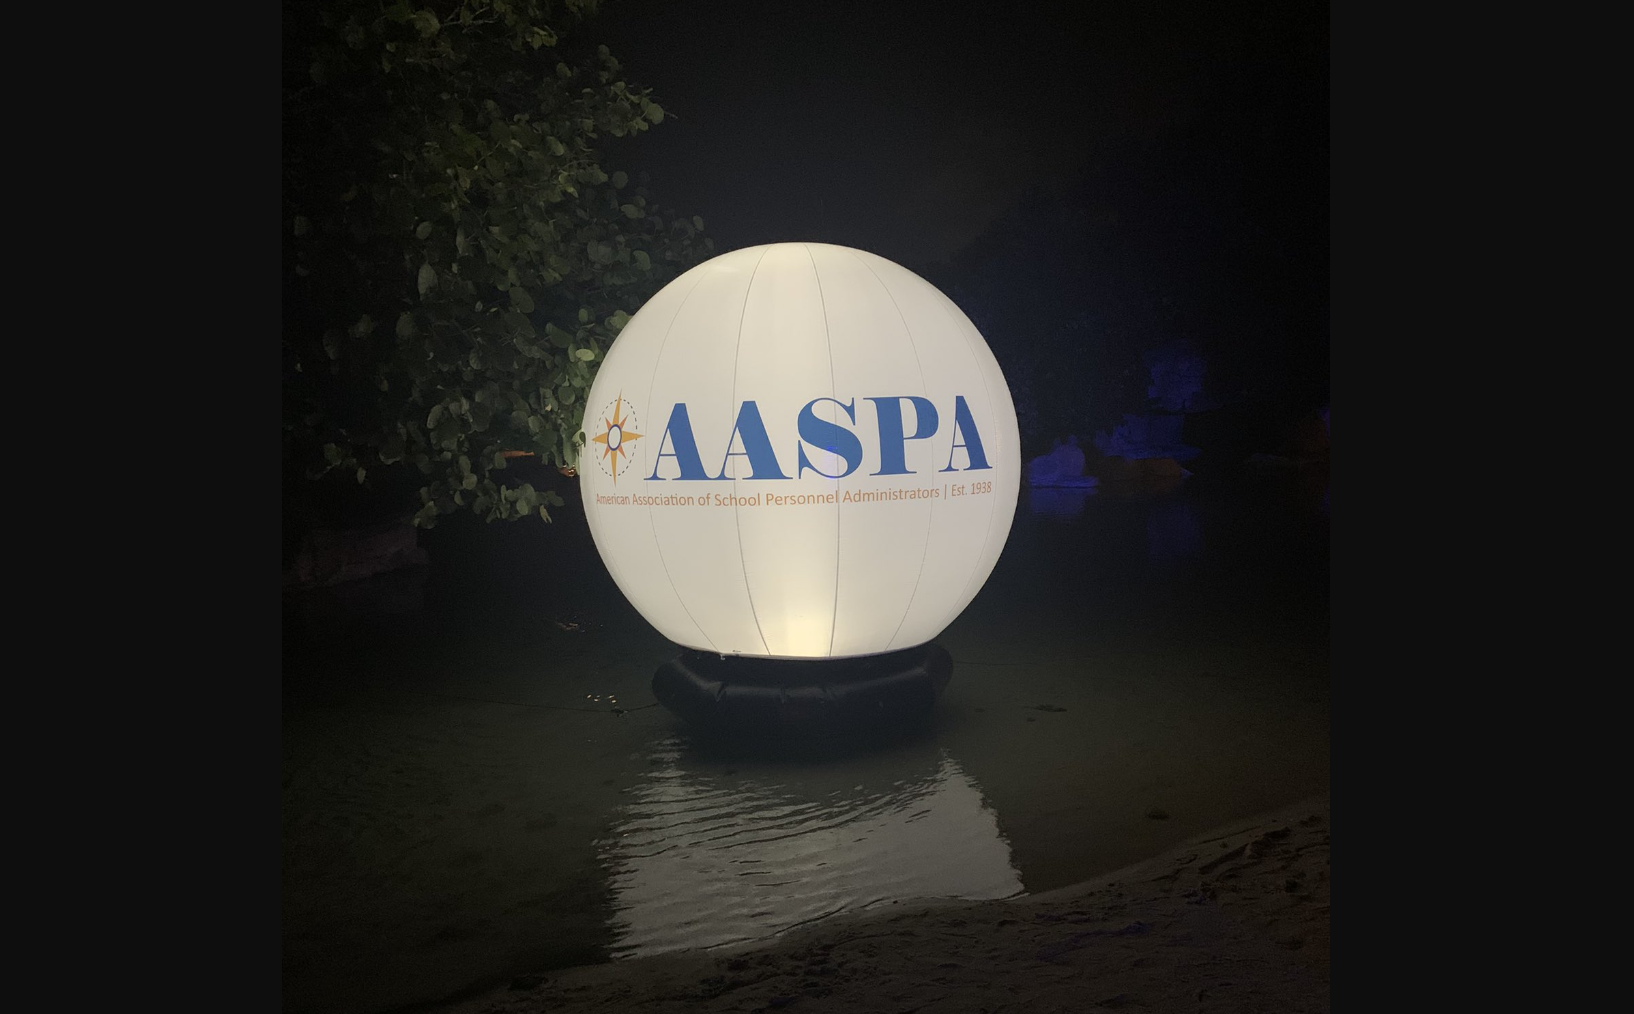 AASPA Ballon in Orlando, Florida